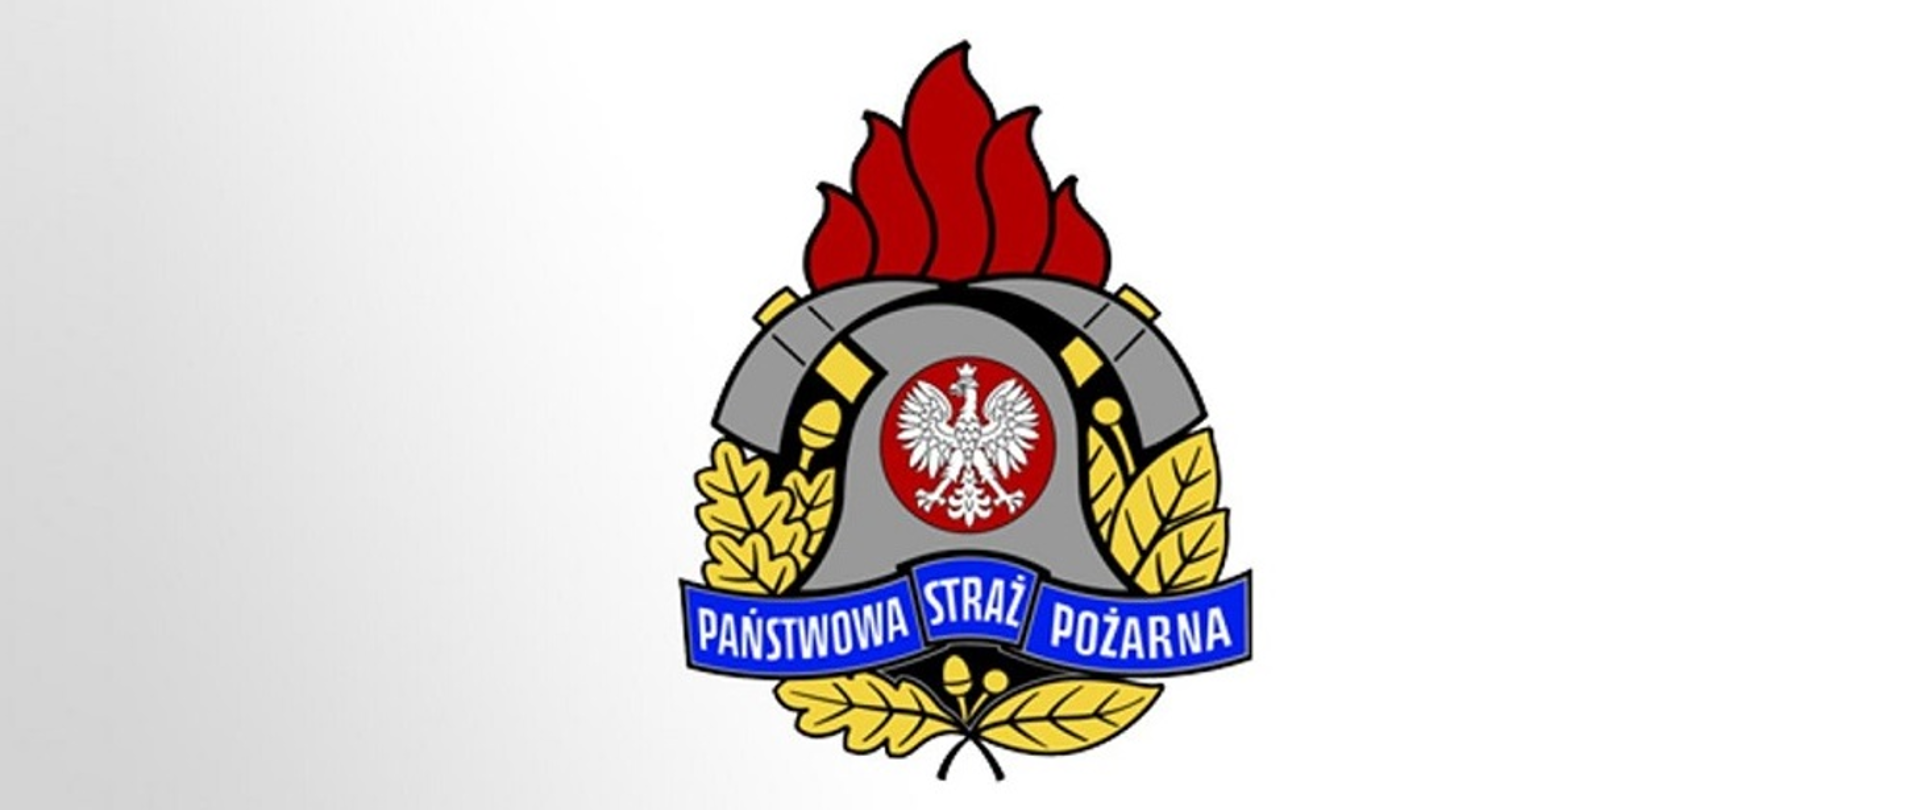 logo psp